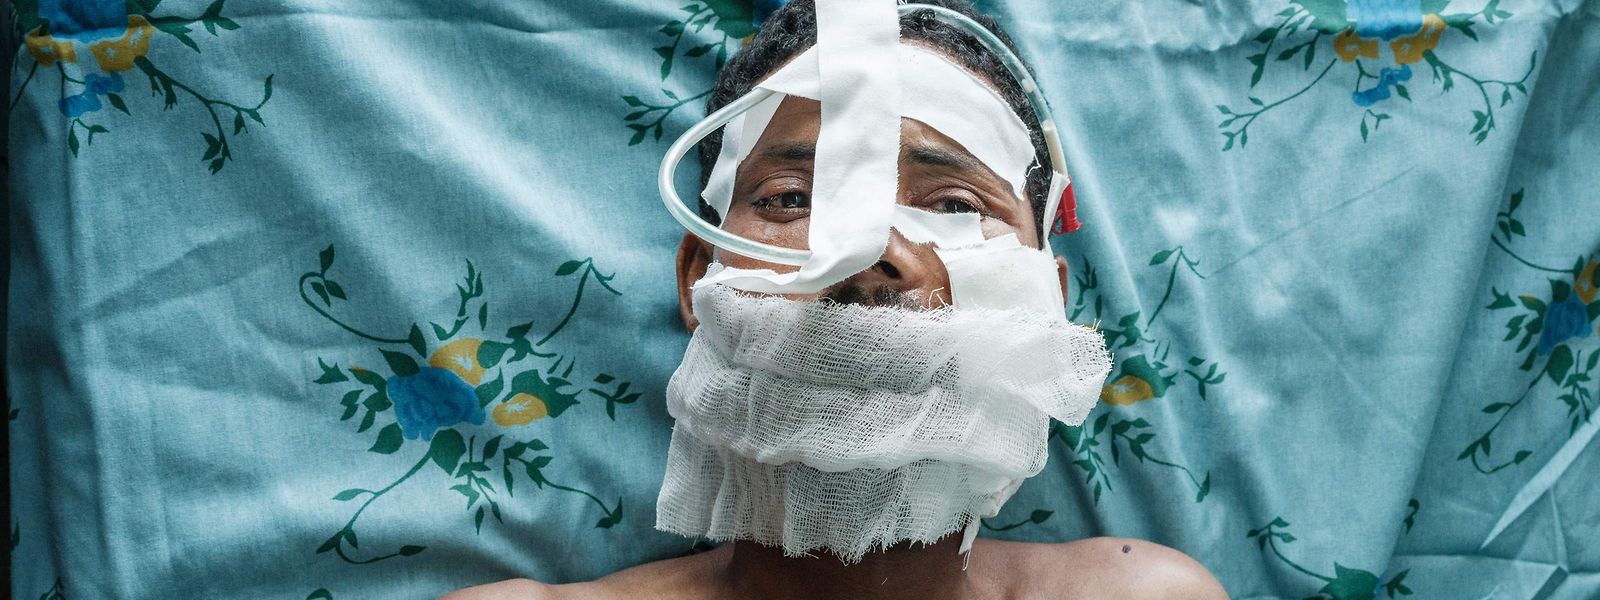 Patienten des Haydar-Hospitals in Mekelle, einige nicht älter als vier Jahre, berichten von ihren traumatischen Erfahrungen während des Konflikts um die äthiopische Krisenprovinz Tigray.